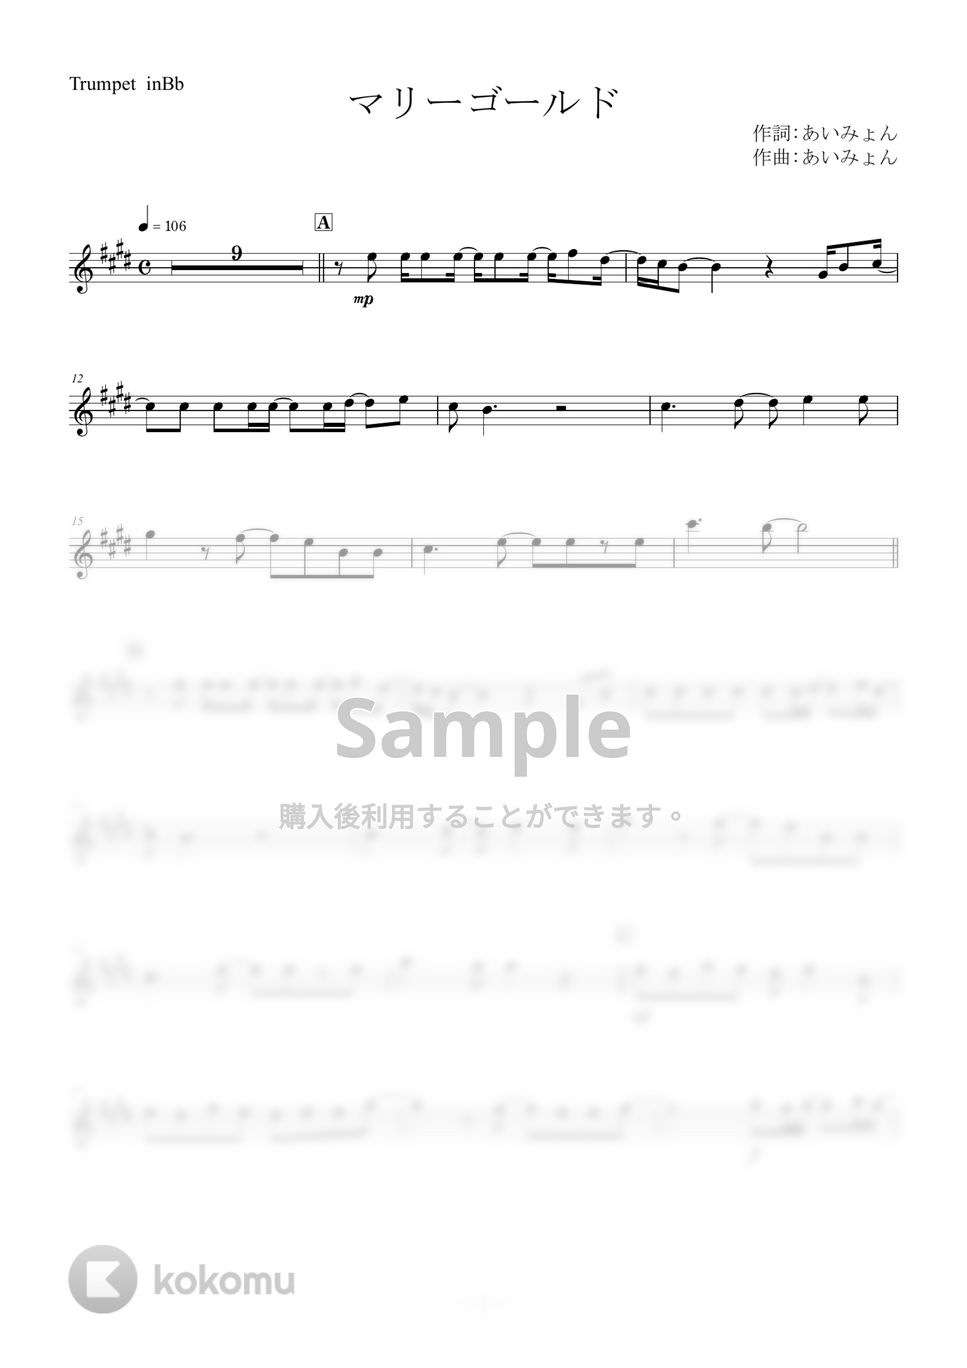 あいみょん - マリーゴールド by メロディー専門譜